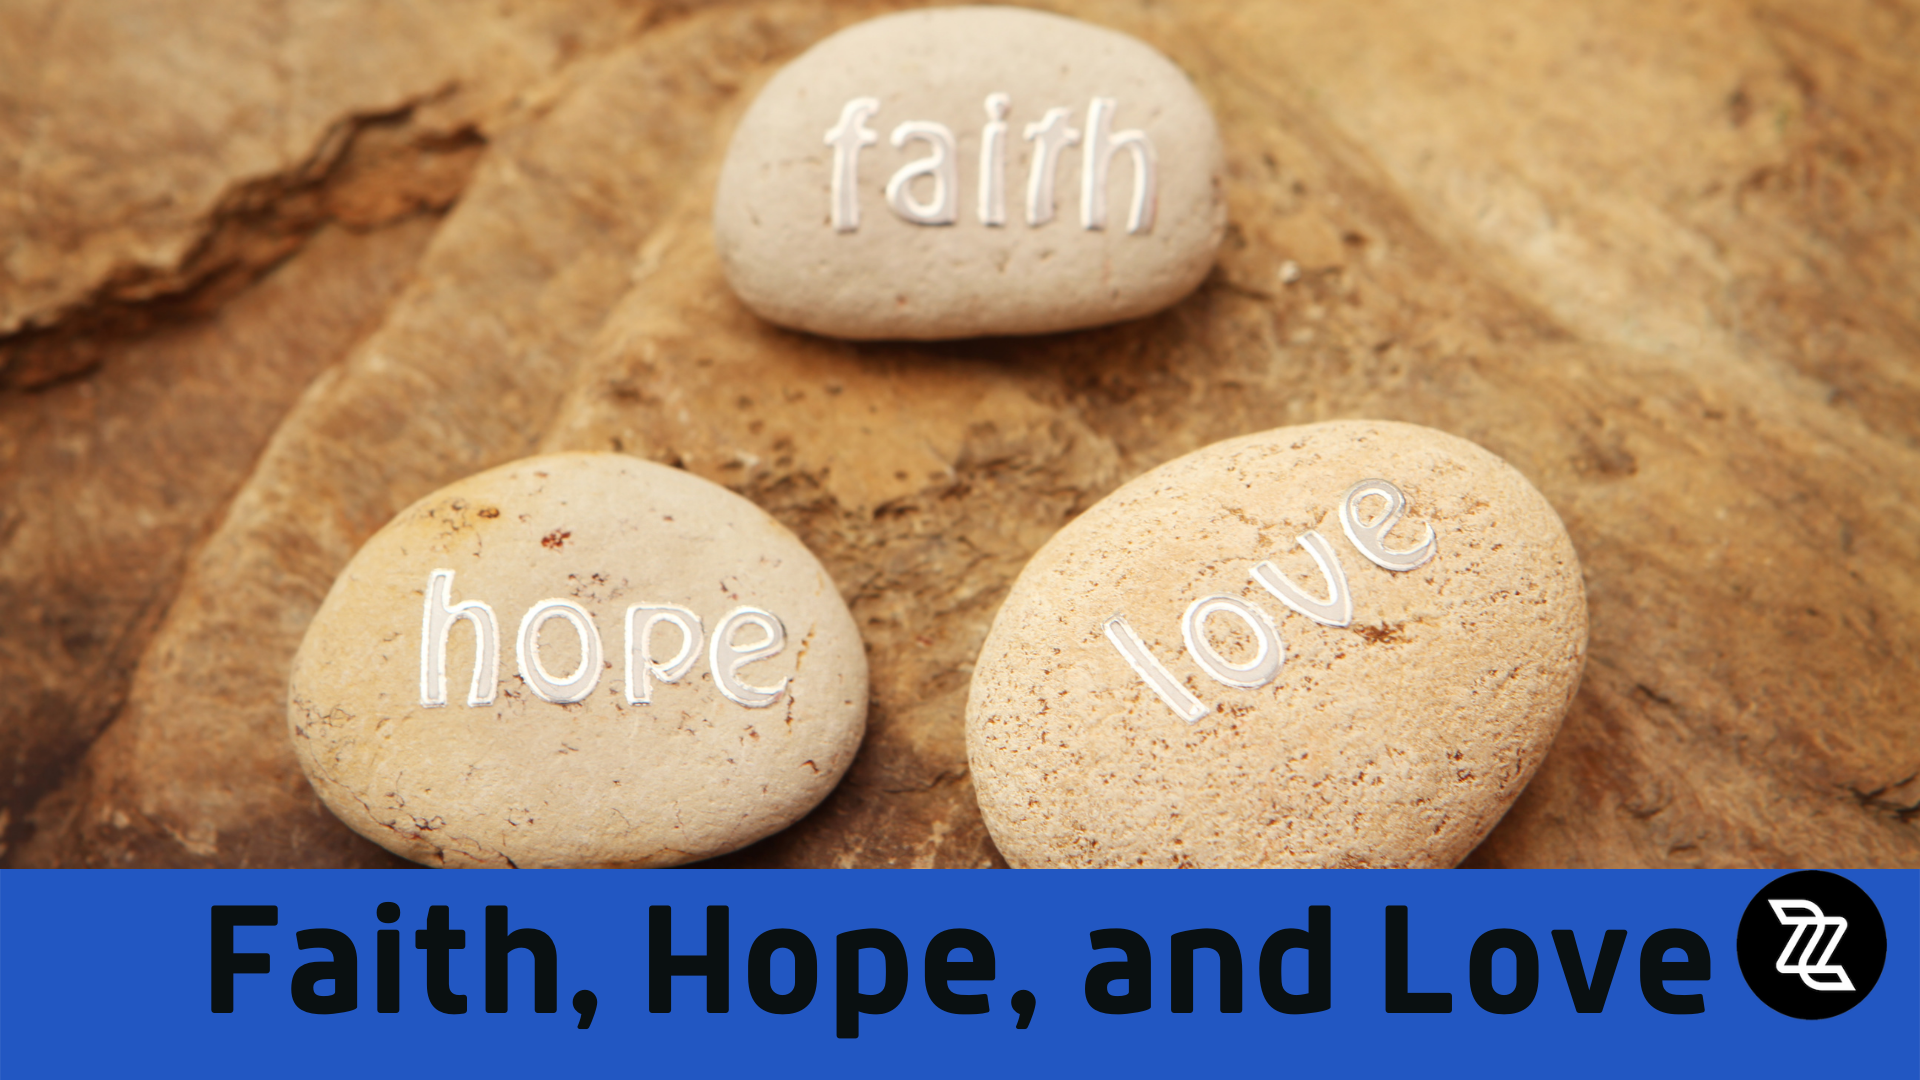 Faith, Hope. and Love